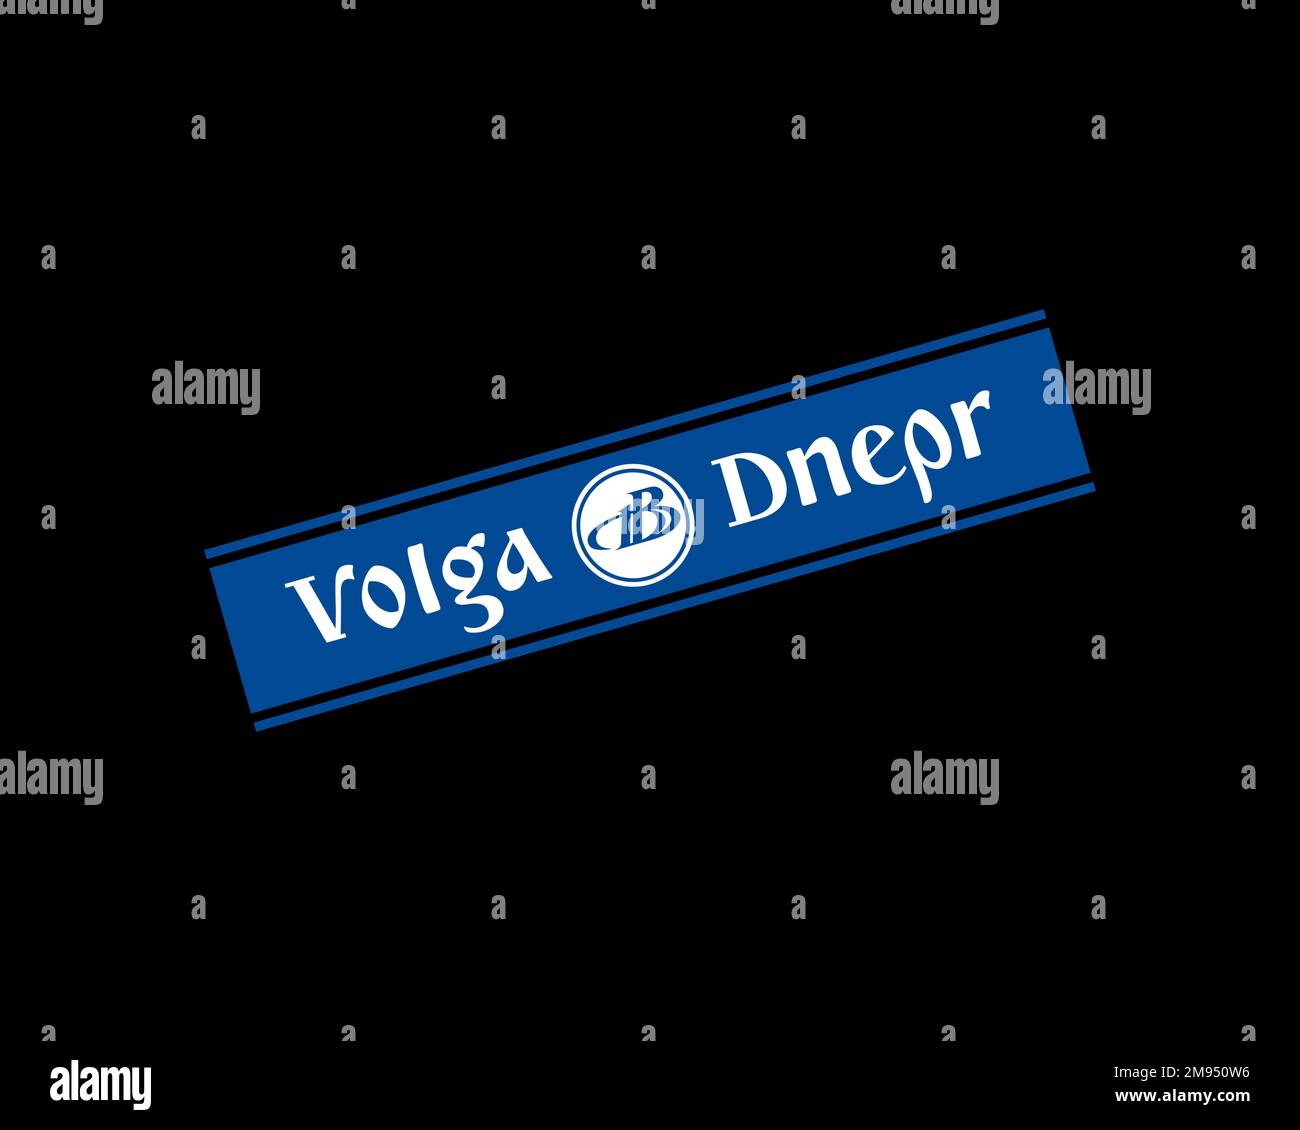 Volga Dnepr Airline, logo pivoté, arrière-plan noir Banque D'Images